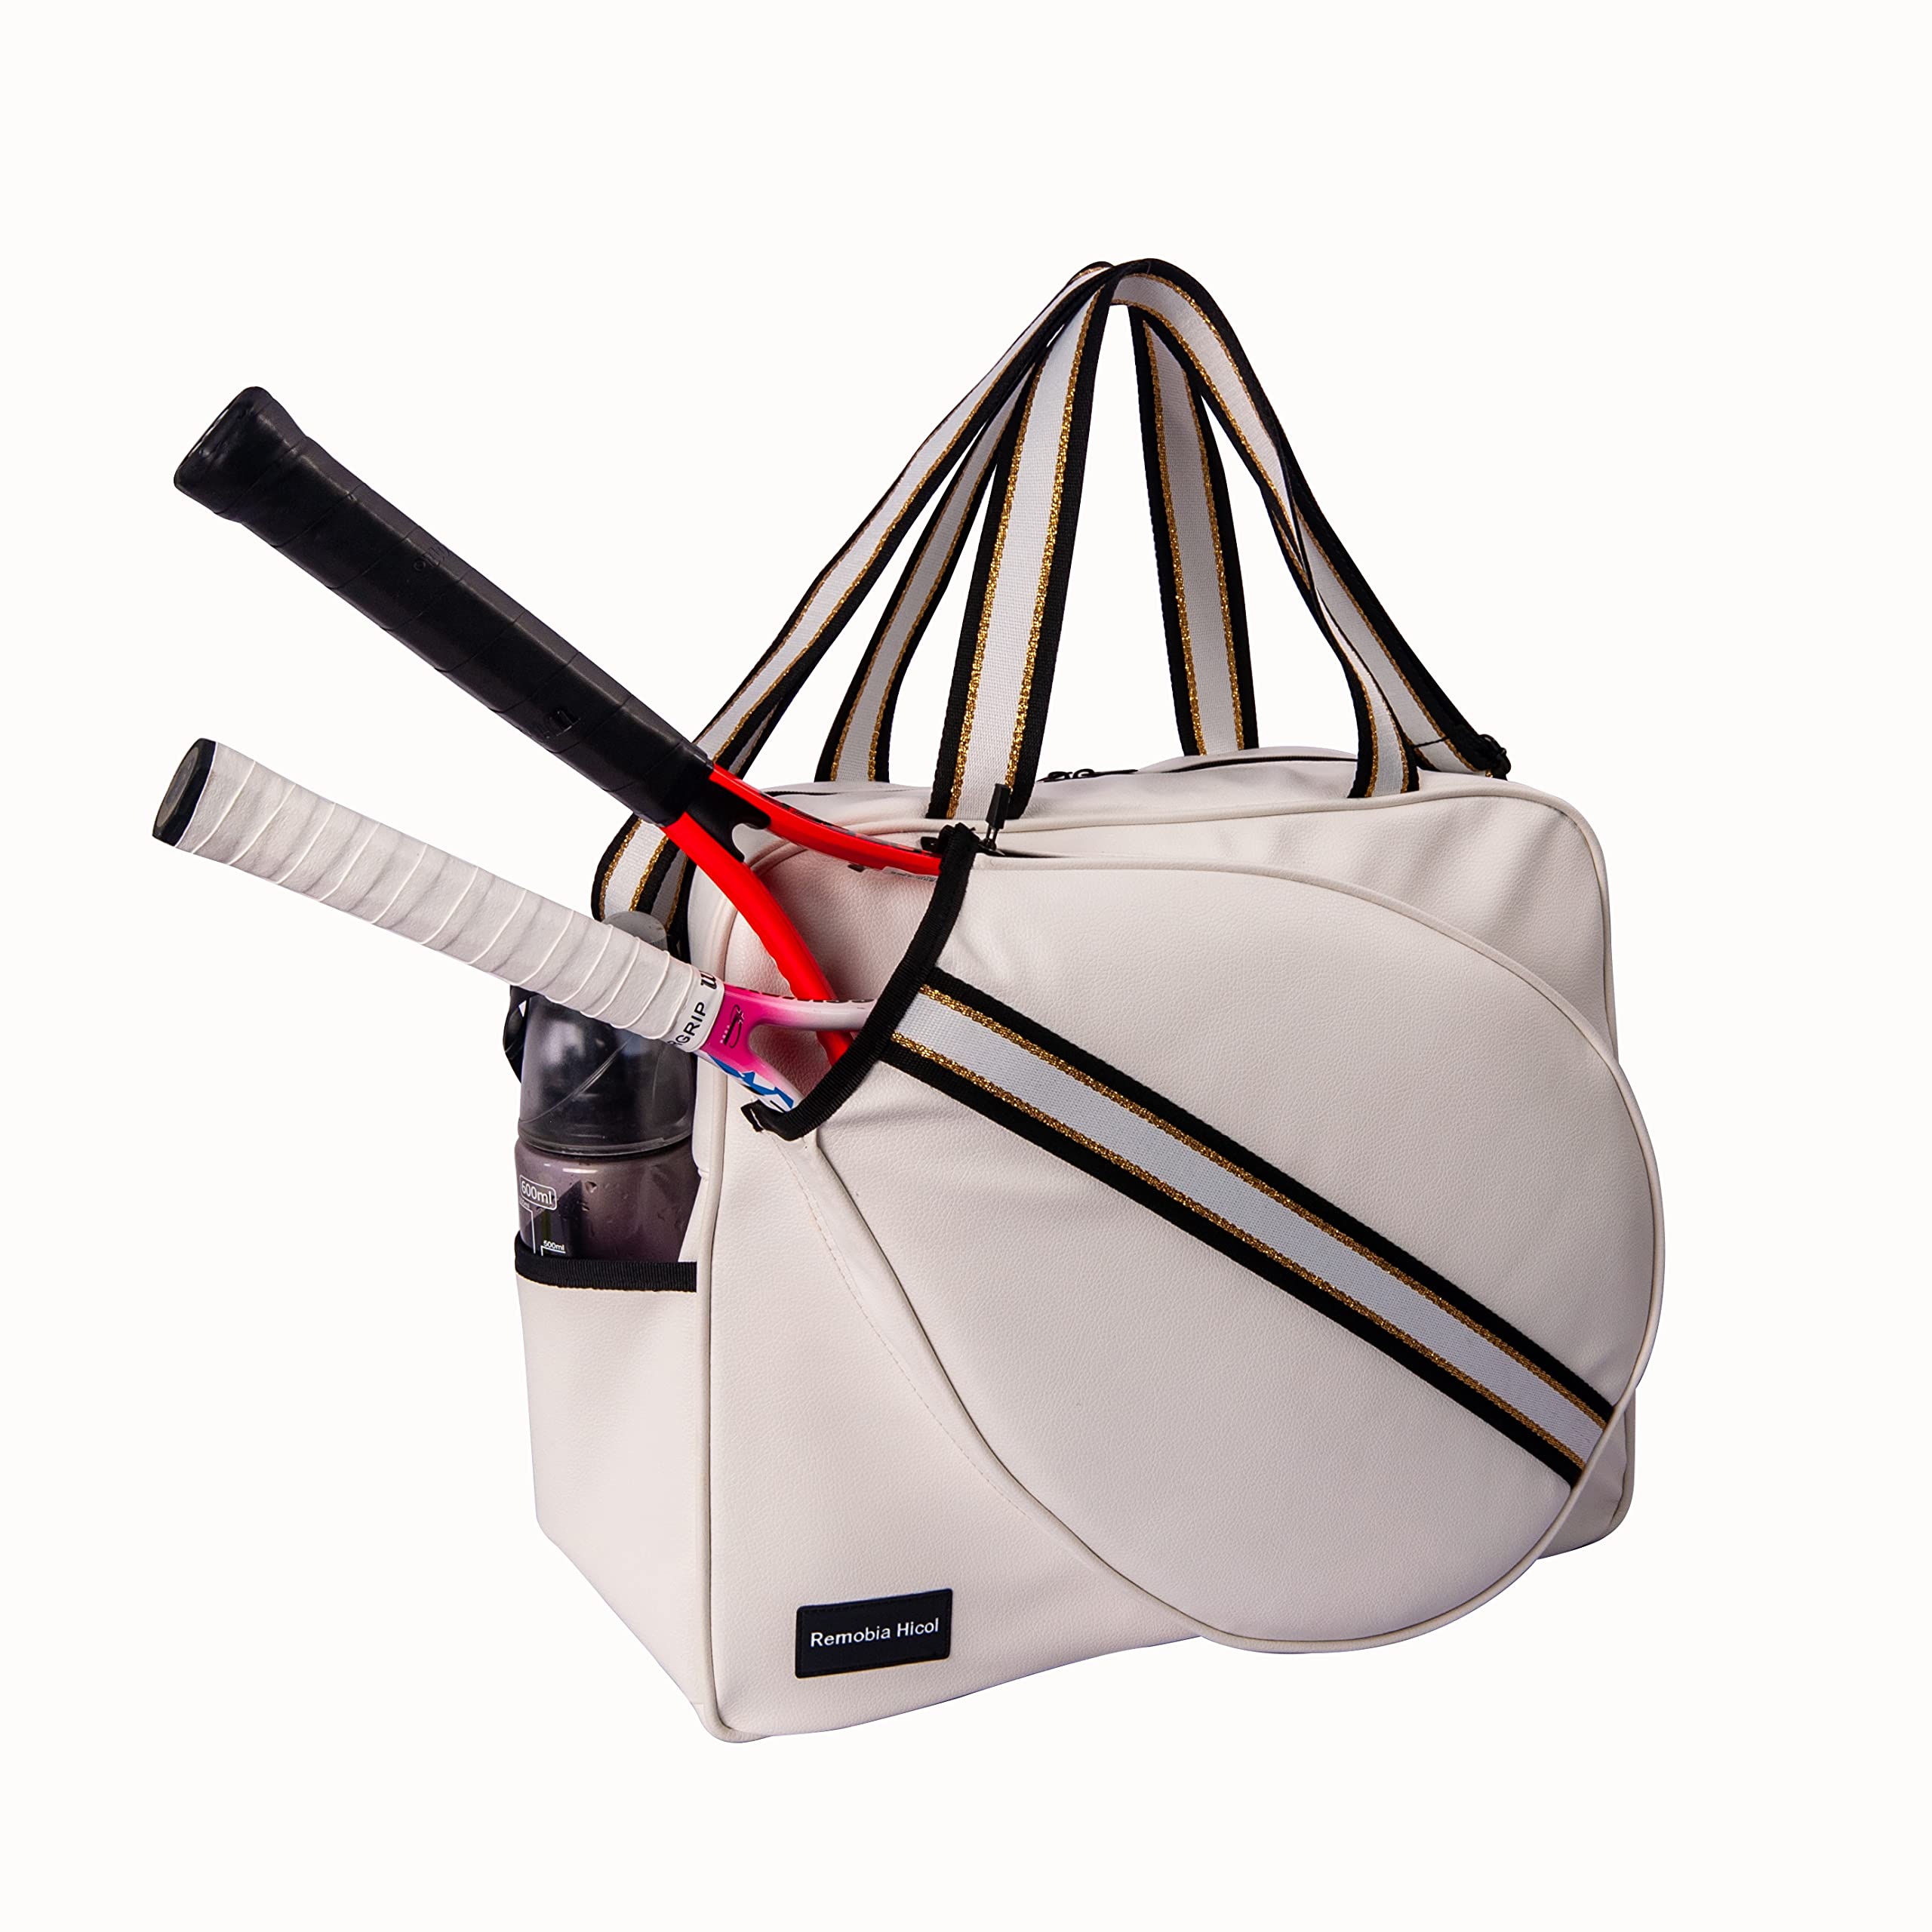 送料無料Remobia Hicol White PU Leather Women Large Sports Handbag Tennis Racket Shoulder Bag Tennis Tote Bag with Front P